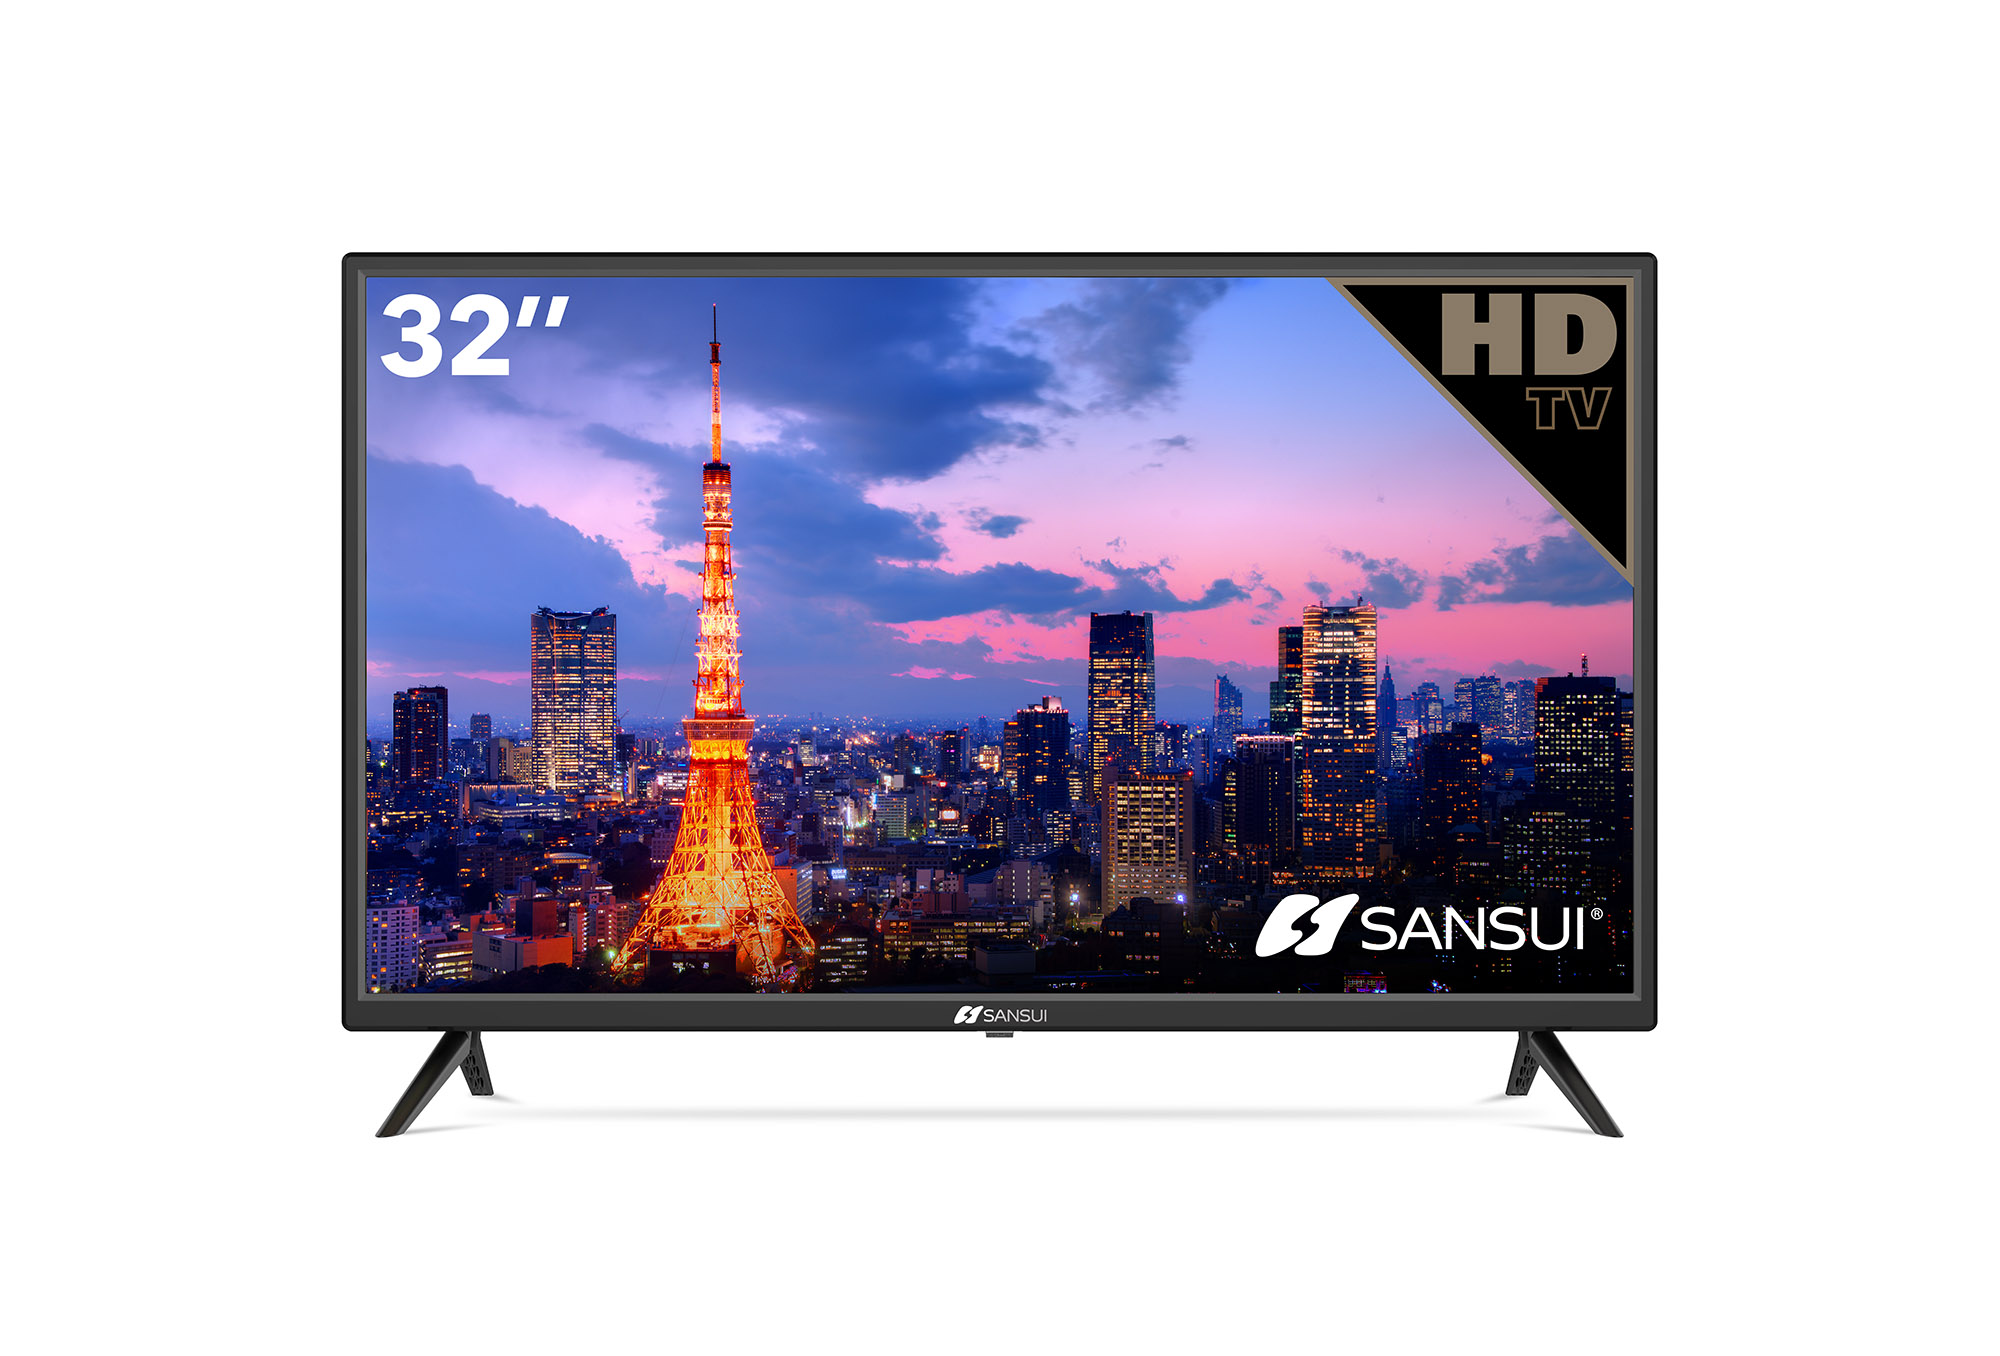 Sansui - Smart TV HD LED 720p Android de 32 pulgadas con HDMI integrado,  USB, alta resolución, reducción de ruido digital, audio Dolby, diseño de